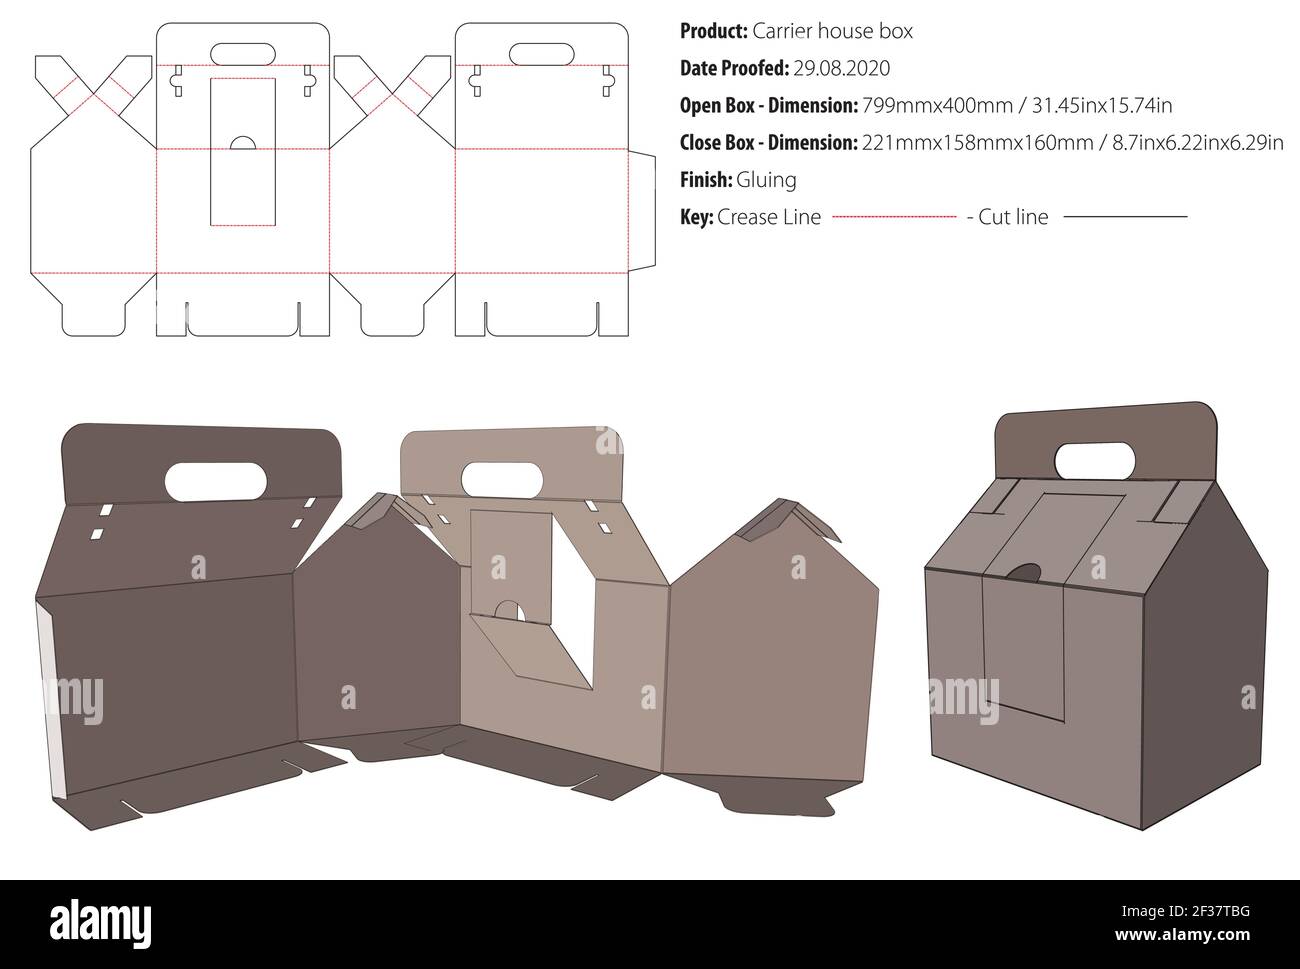 Carrier House Box Verpackung Design Vorlage kleben die geschnitten - Vektor Stock Vektor